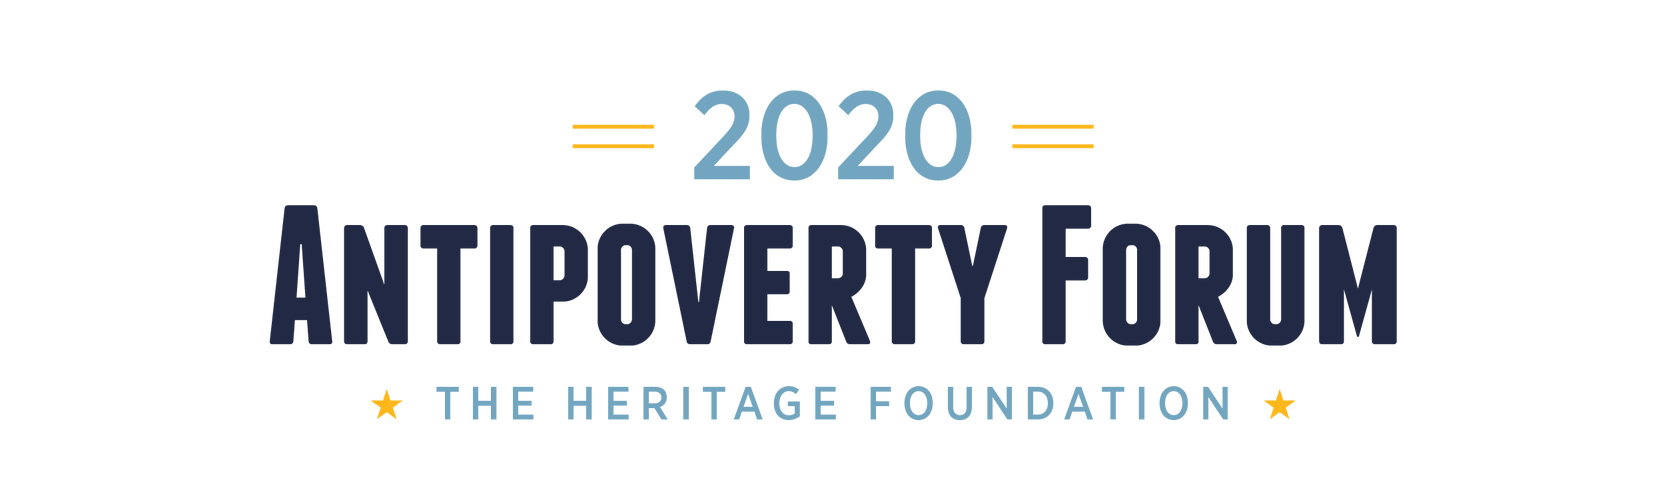 2020 Antipoverty Forum